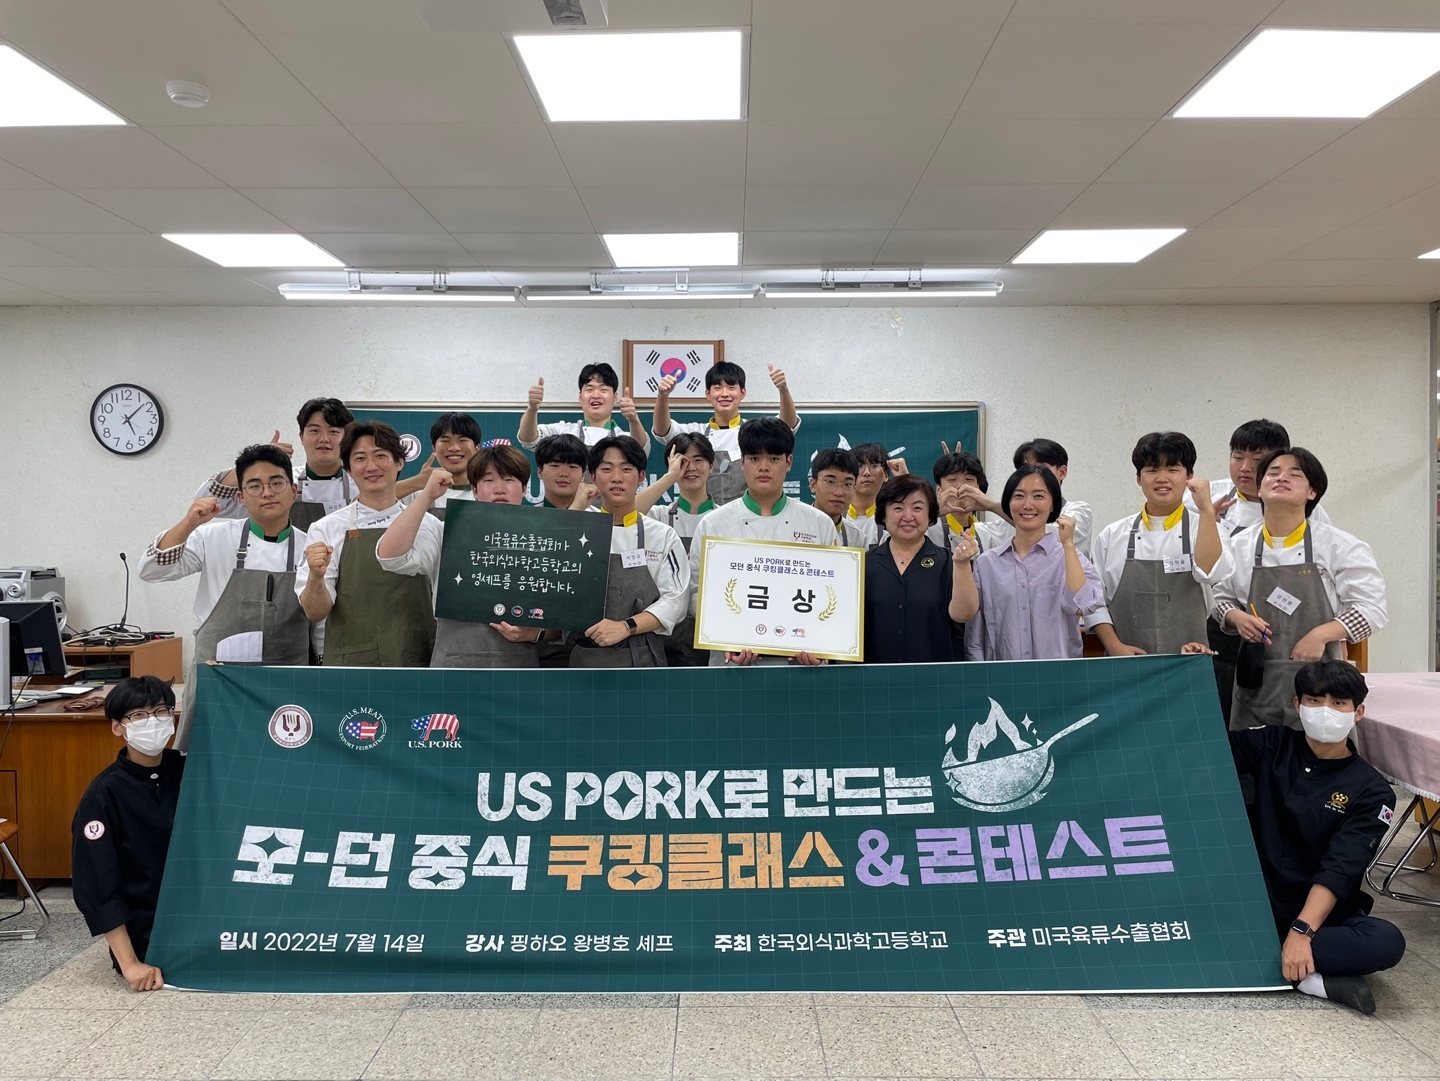 [경기]한국외식과학고, 미국육류수출협회 영셰프들을 위한 멘토링 쿠킹클래스 및 쿠킹 콘테스트 개최